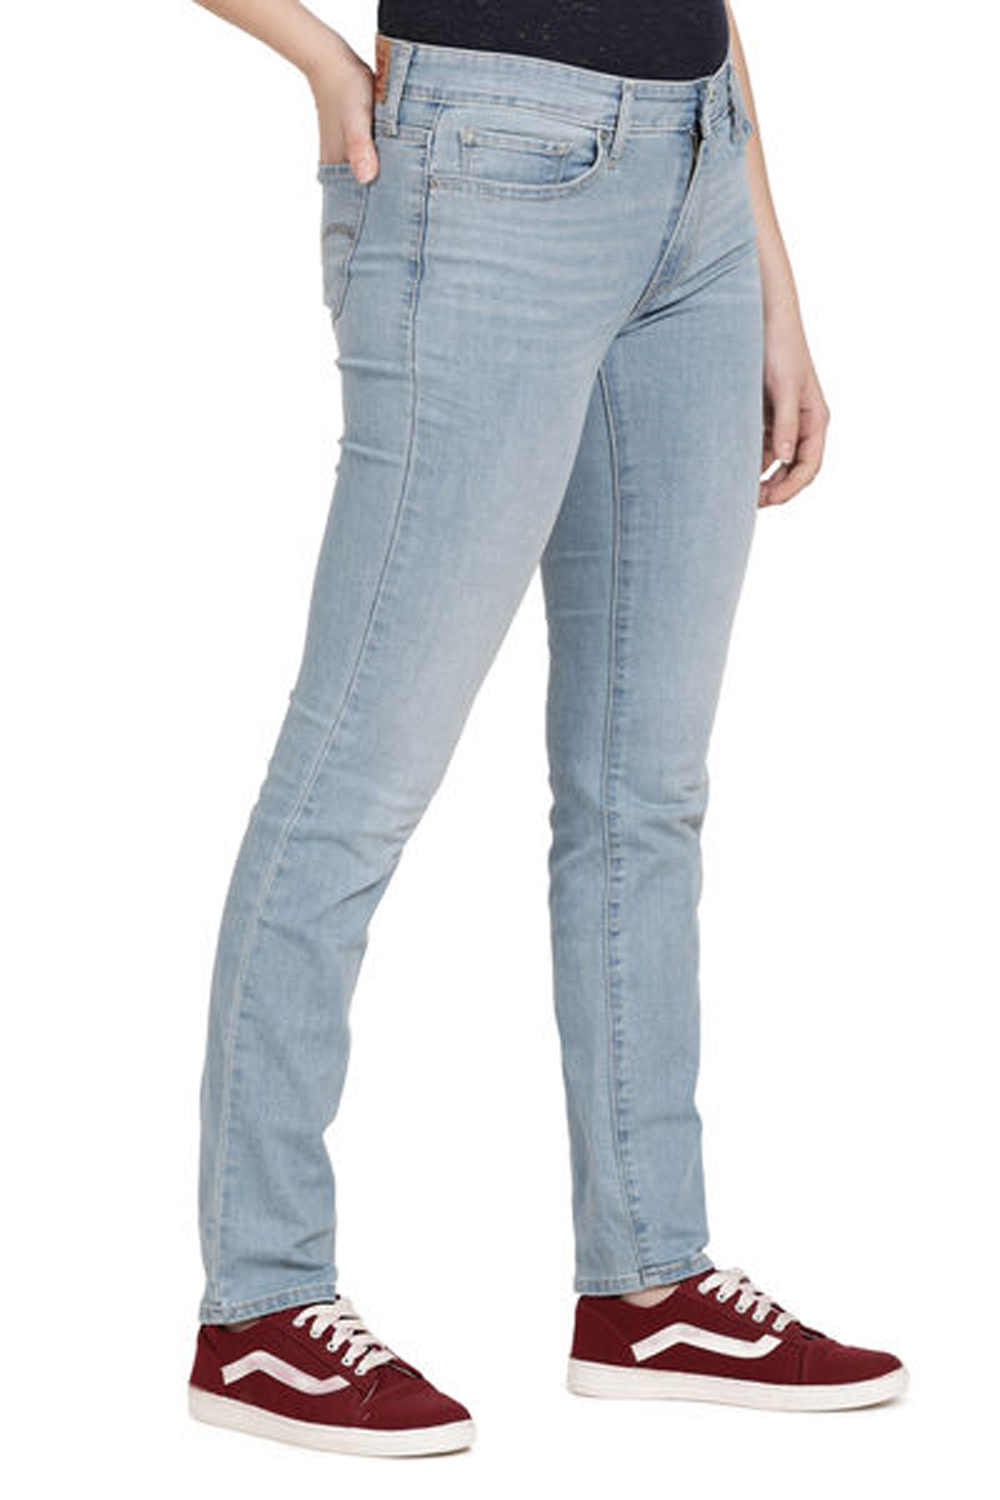 Levi's 712 Slim Fit Blue Womens Jean 